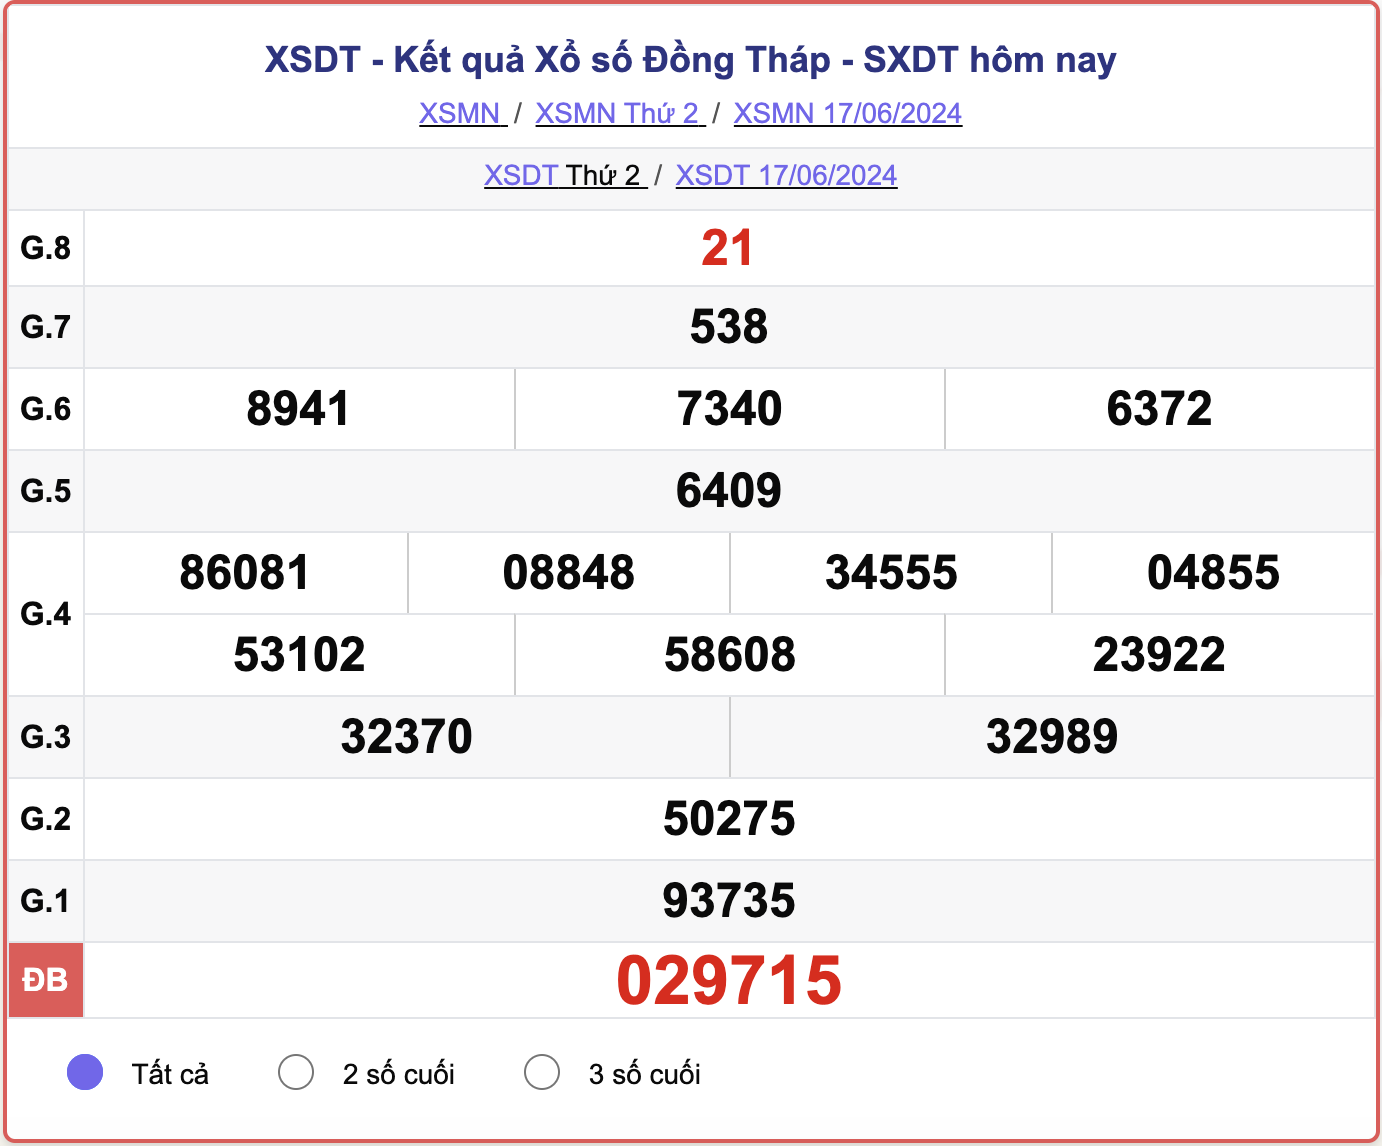 XSDT 17/6, kết quả xổ số Đồng Tháp hôm nay 17/6/2024.